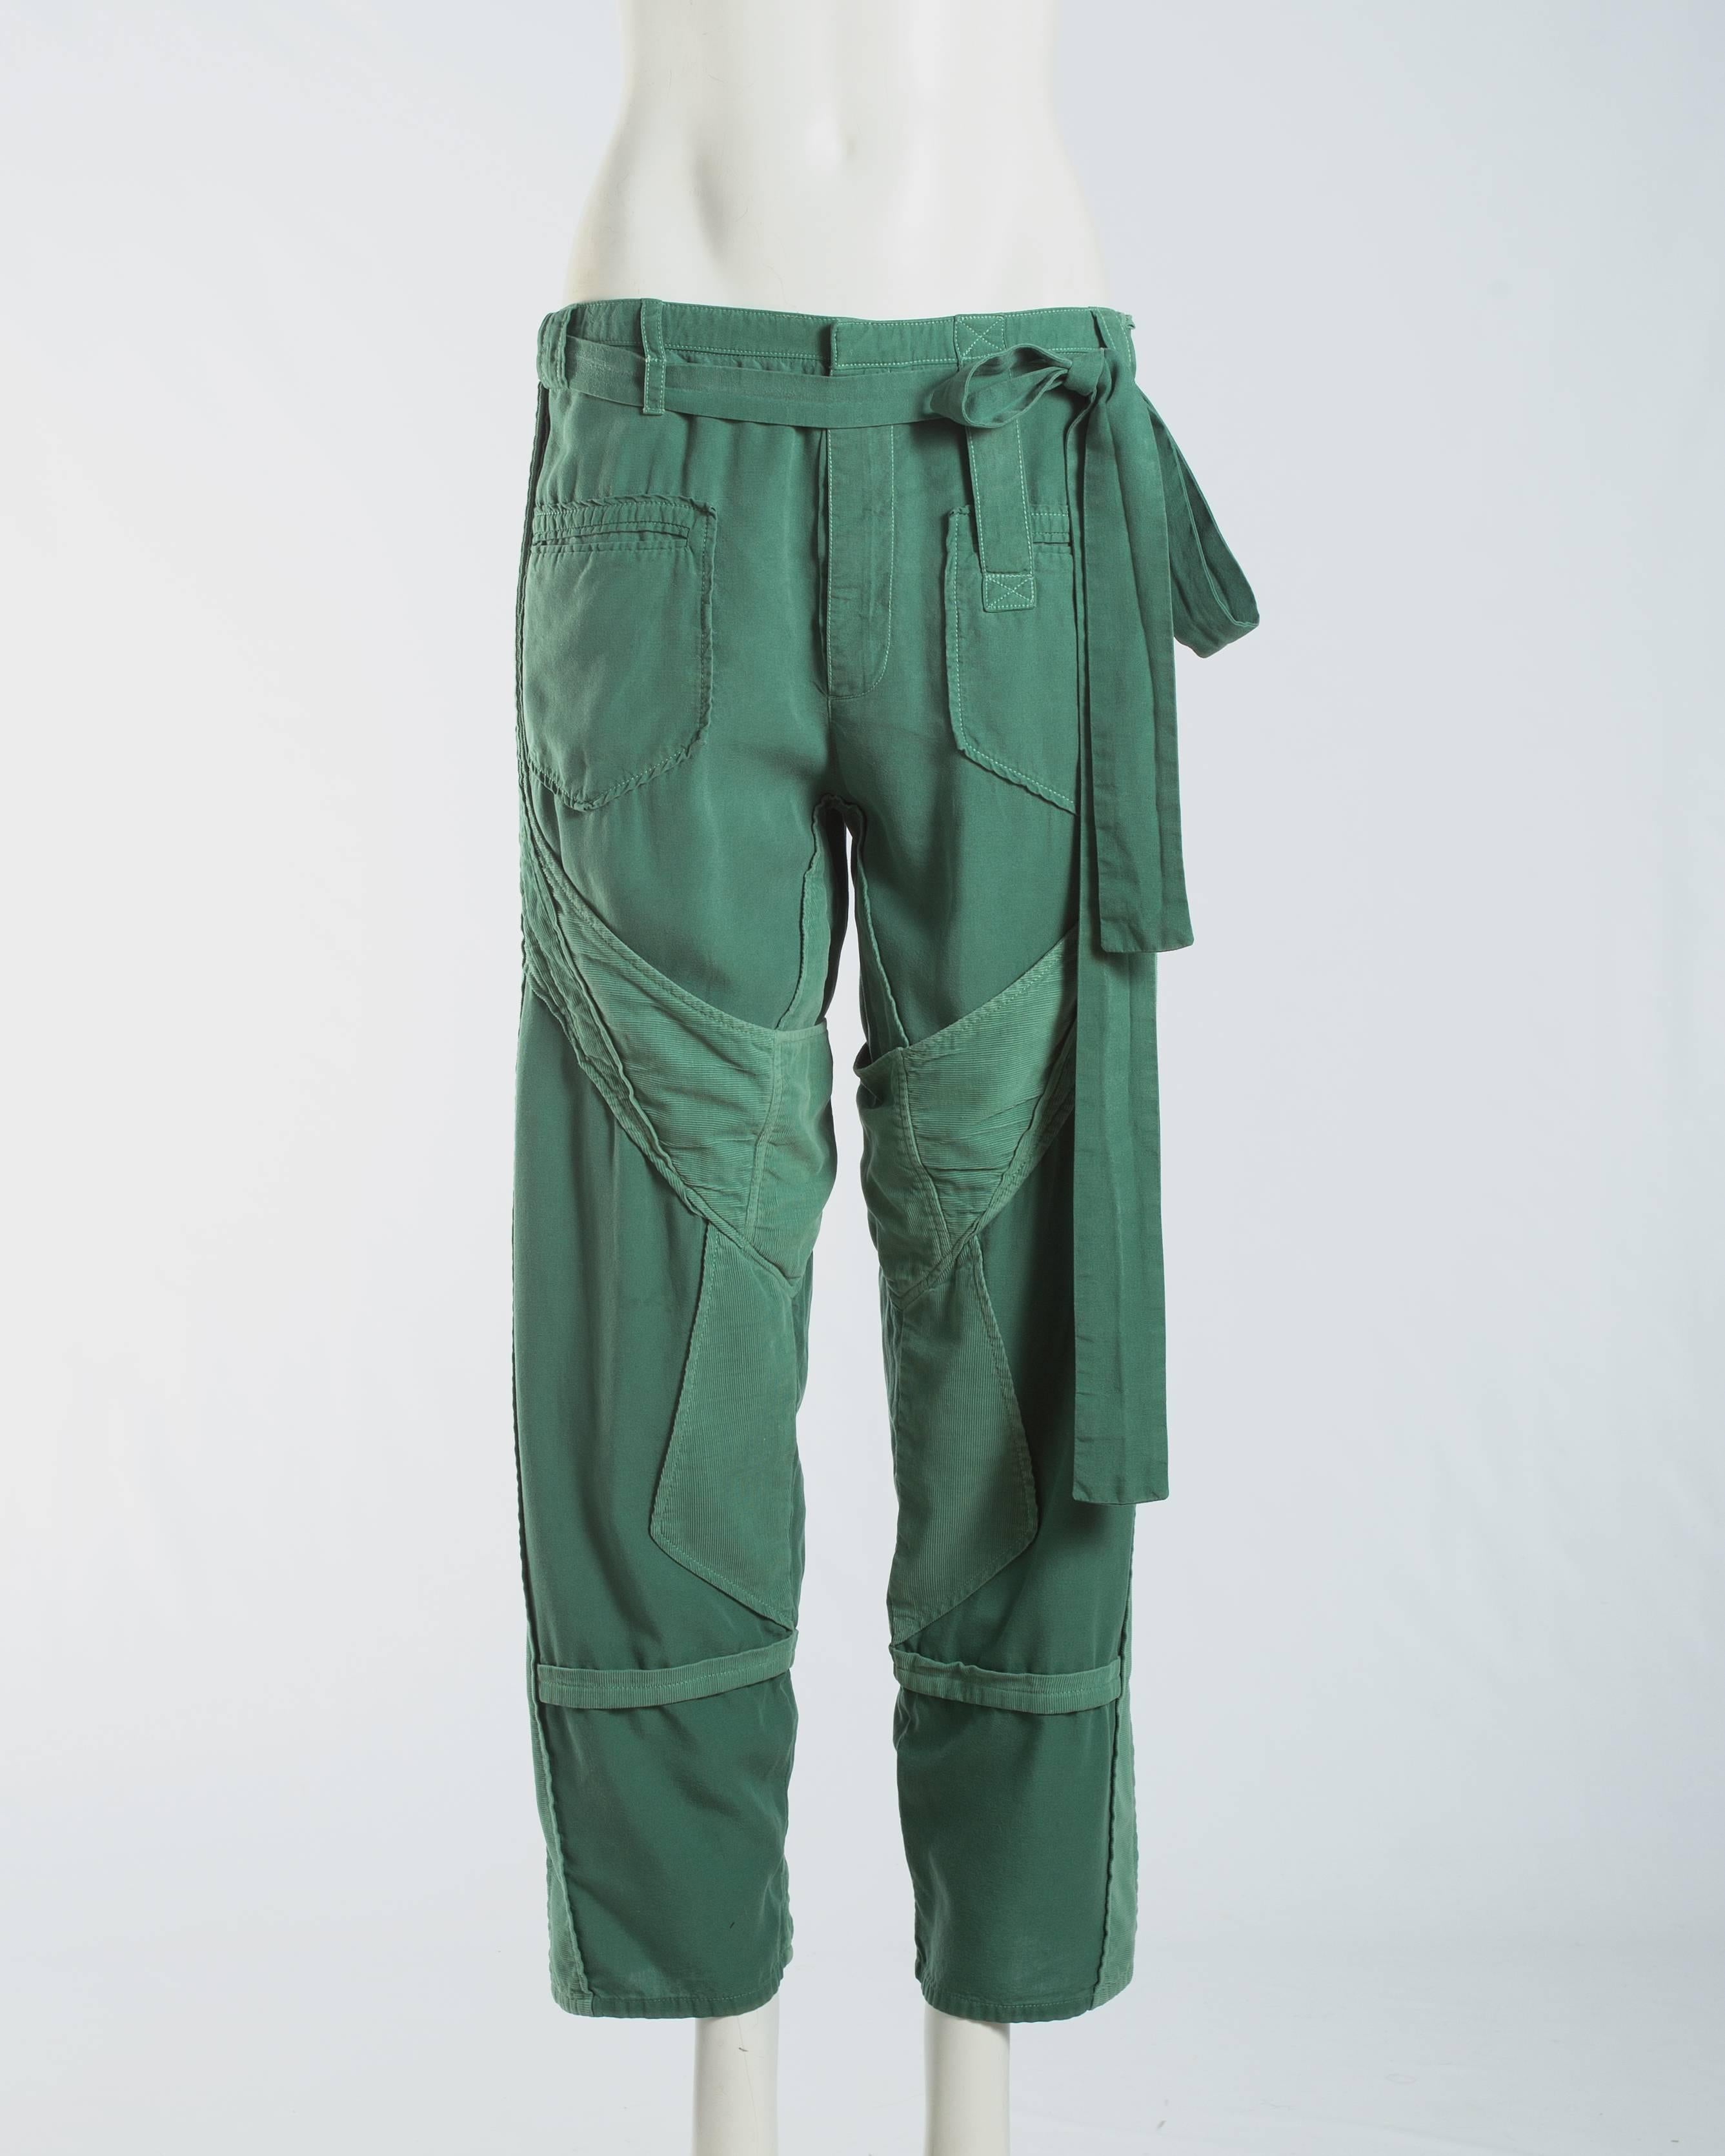 Balenciaga by Nicolas Ghesquière green cotton and corduroy cargo pants

Spring-Summer 2002